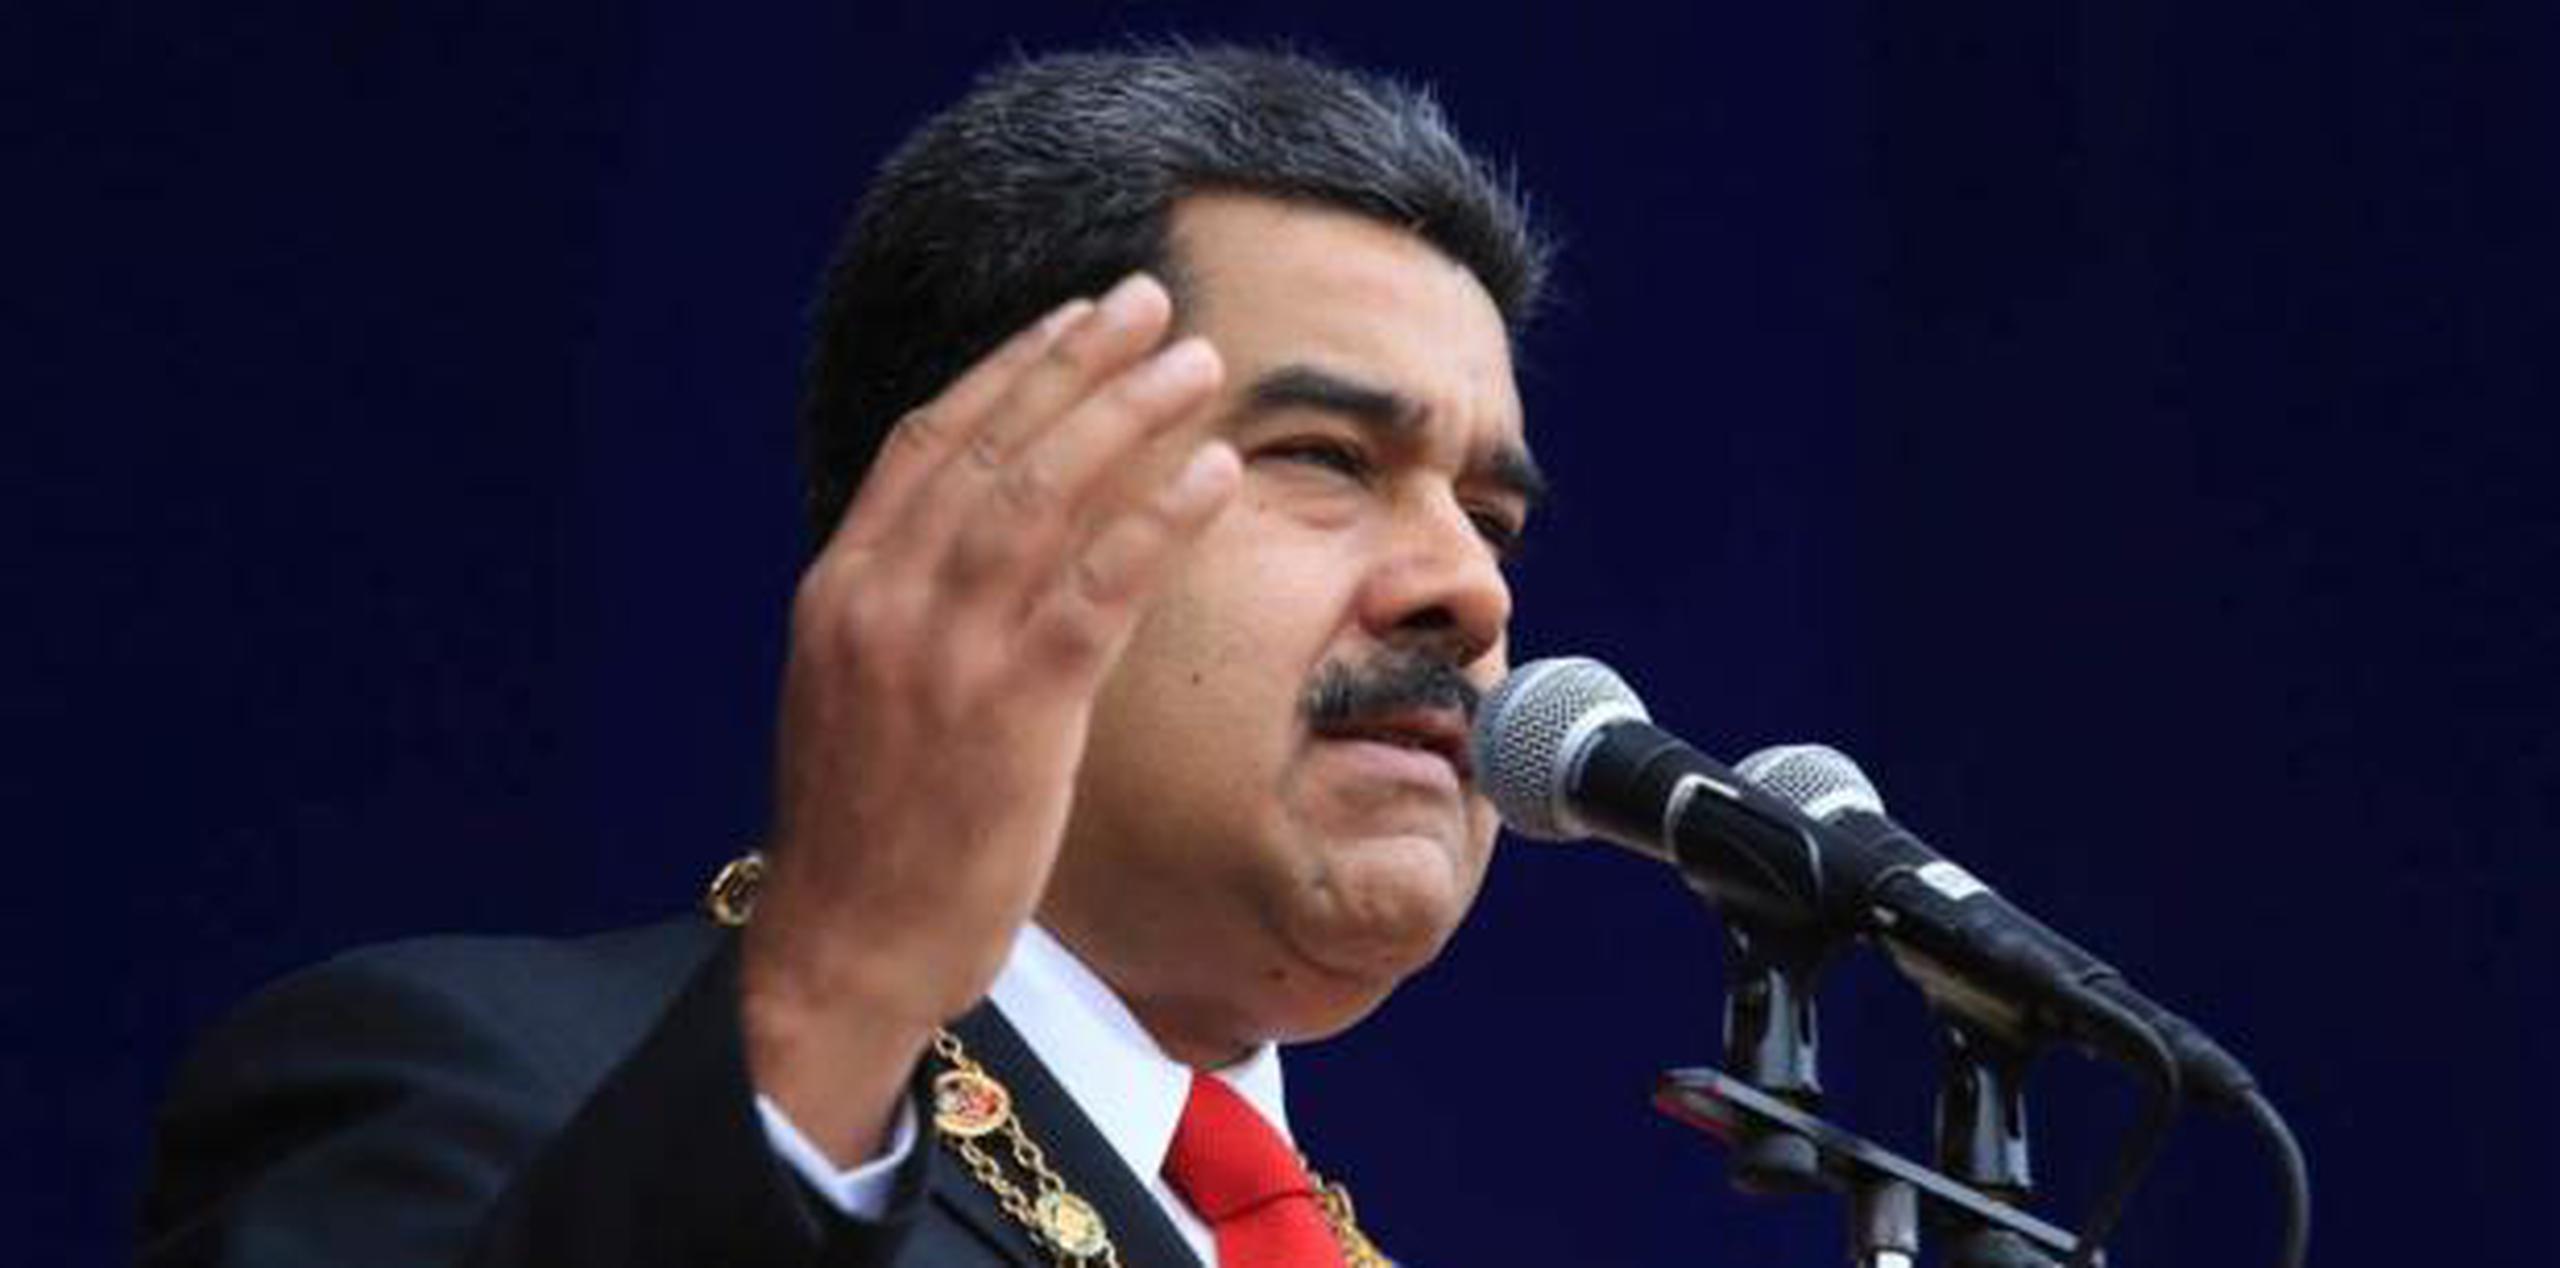 Las discusiones sobre los hechos del sábado se concentraron en analizar la veracidad del atentado, en ninguna ciudad salió el chavismo a las calles a mostrar su apoyo a Maduro. (AP)